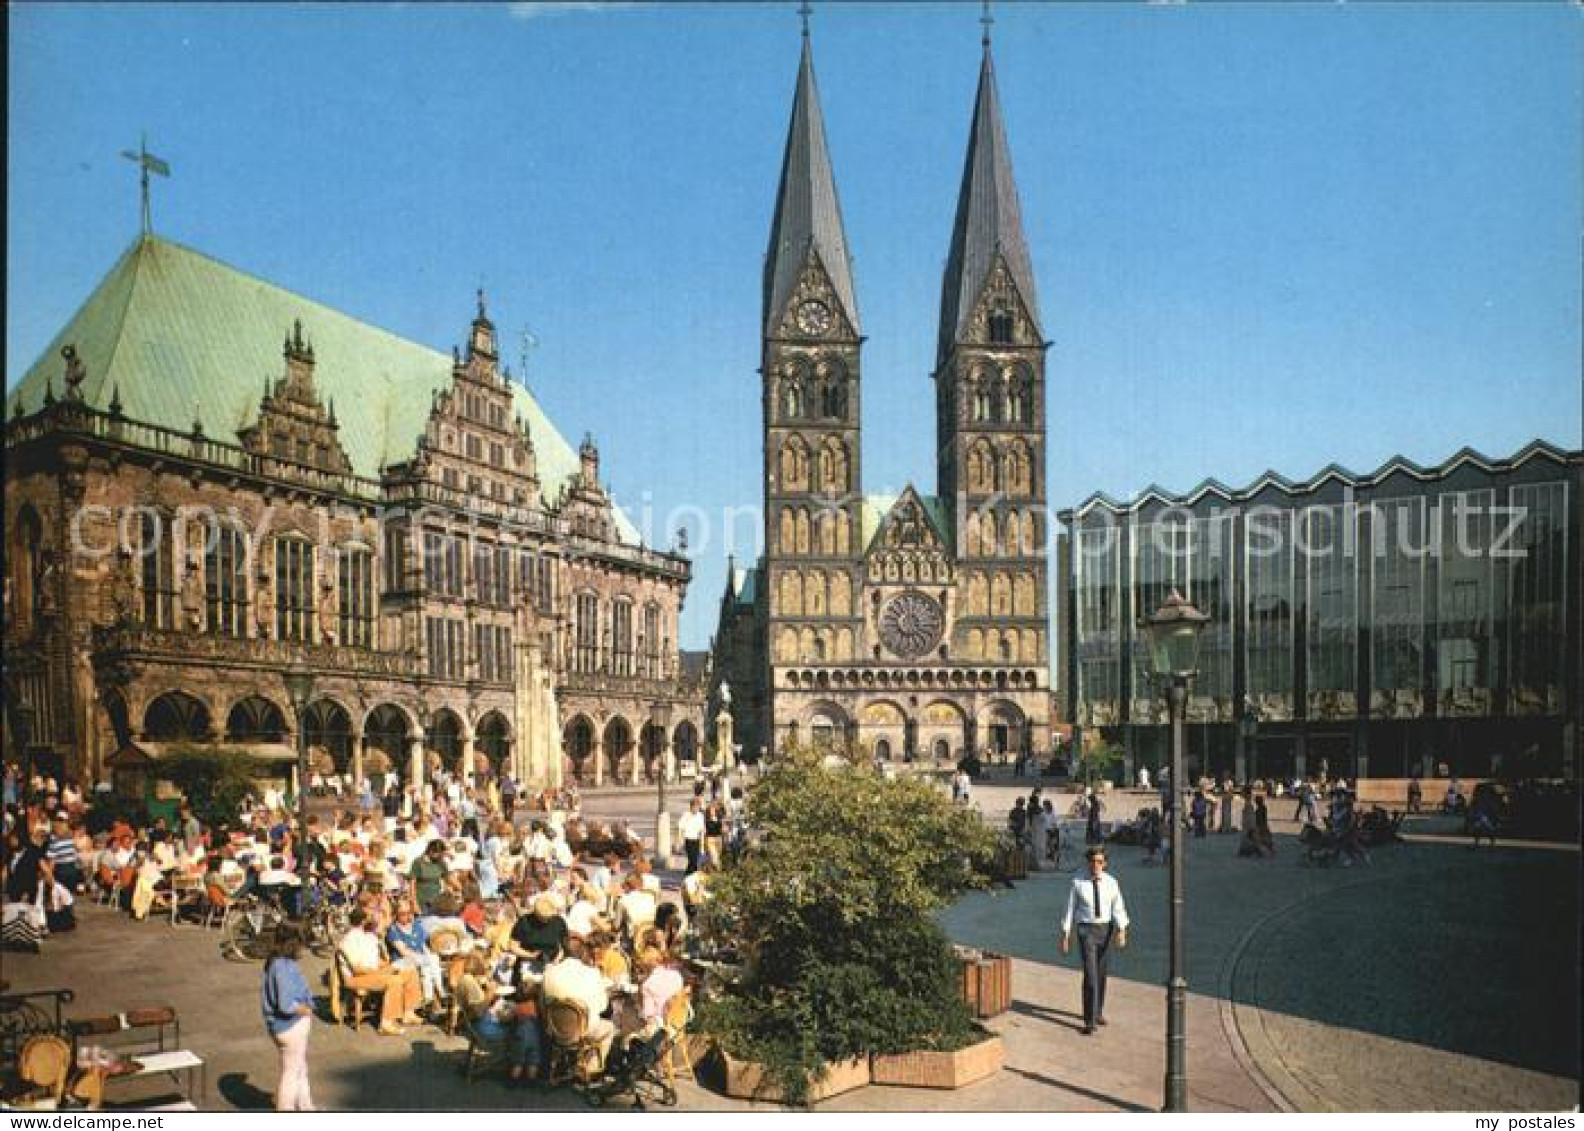 72566086 Bremen Marktplatz Rathaus Dom Und Parlamentsgebaeude Arbergen - Bremen